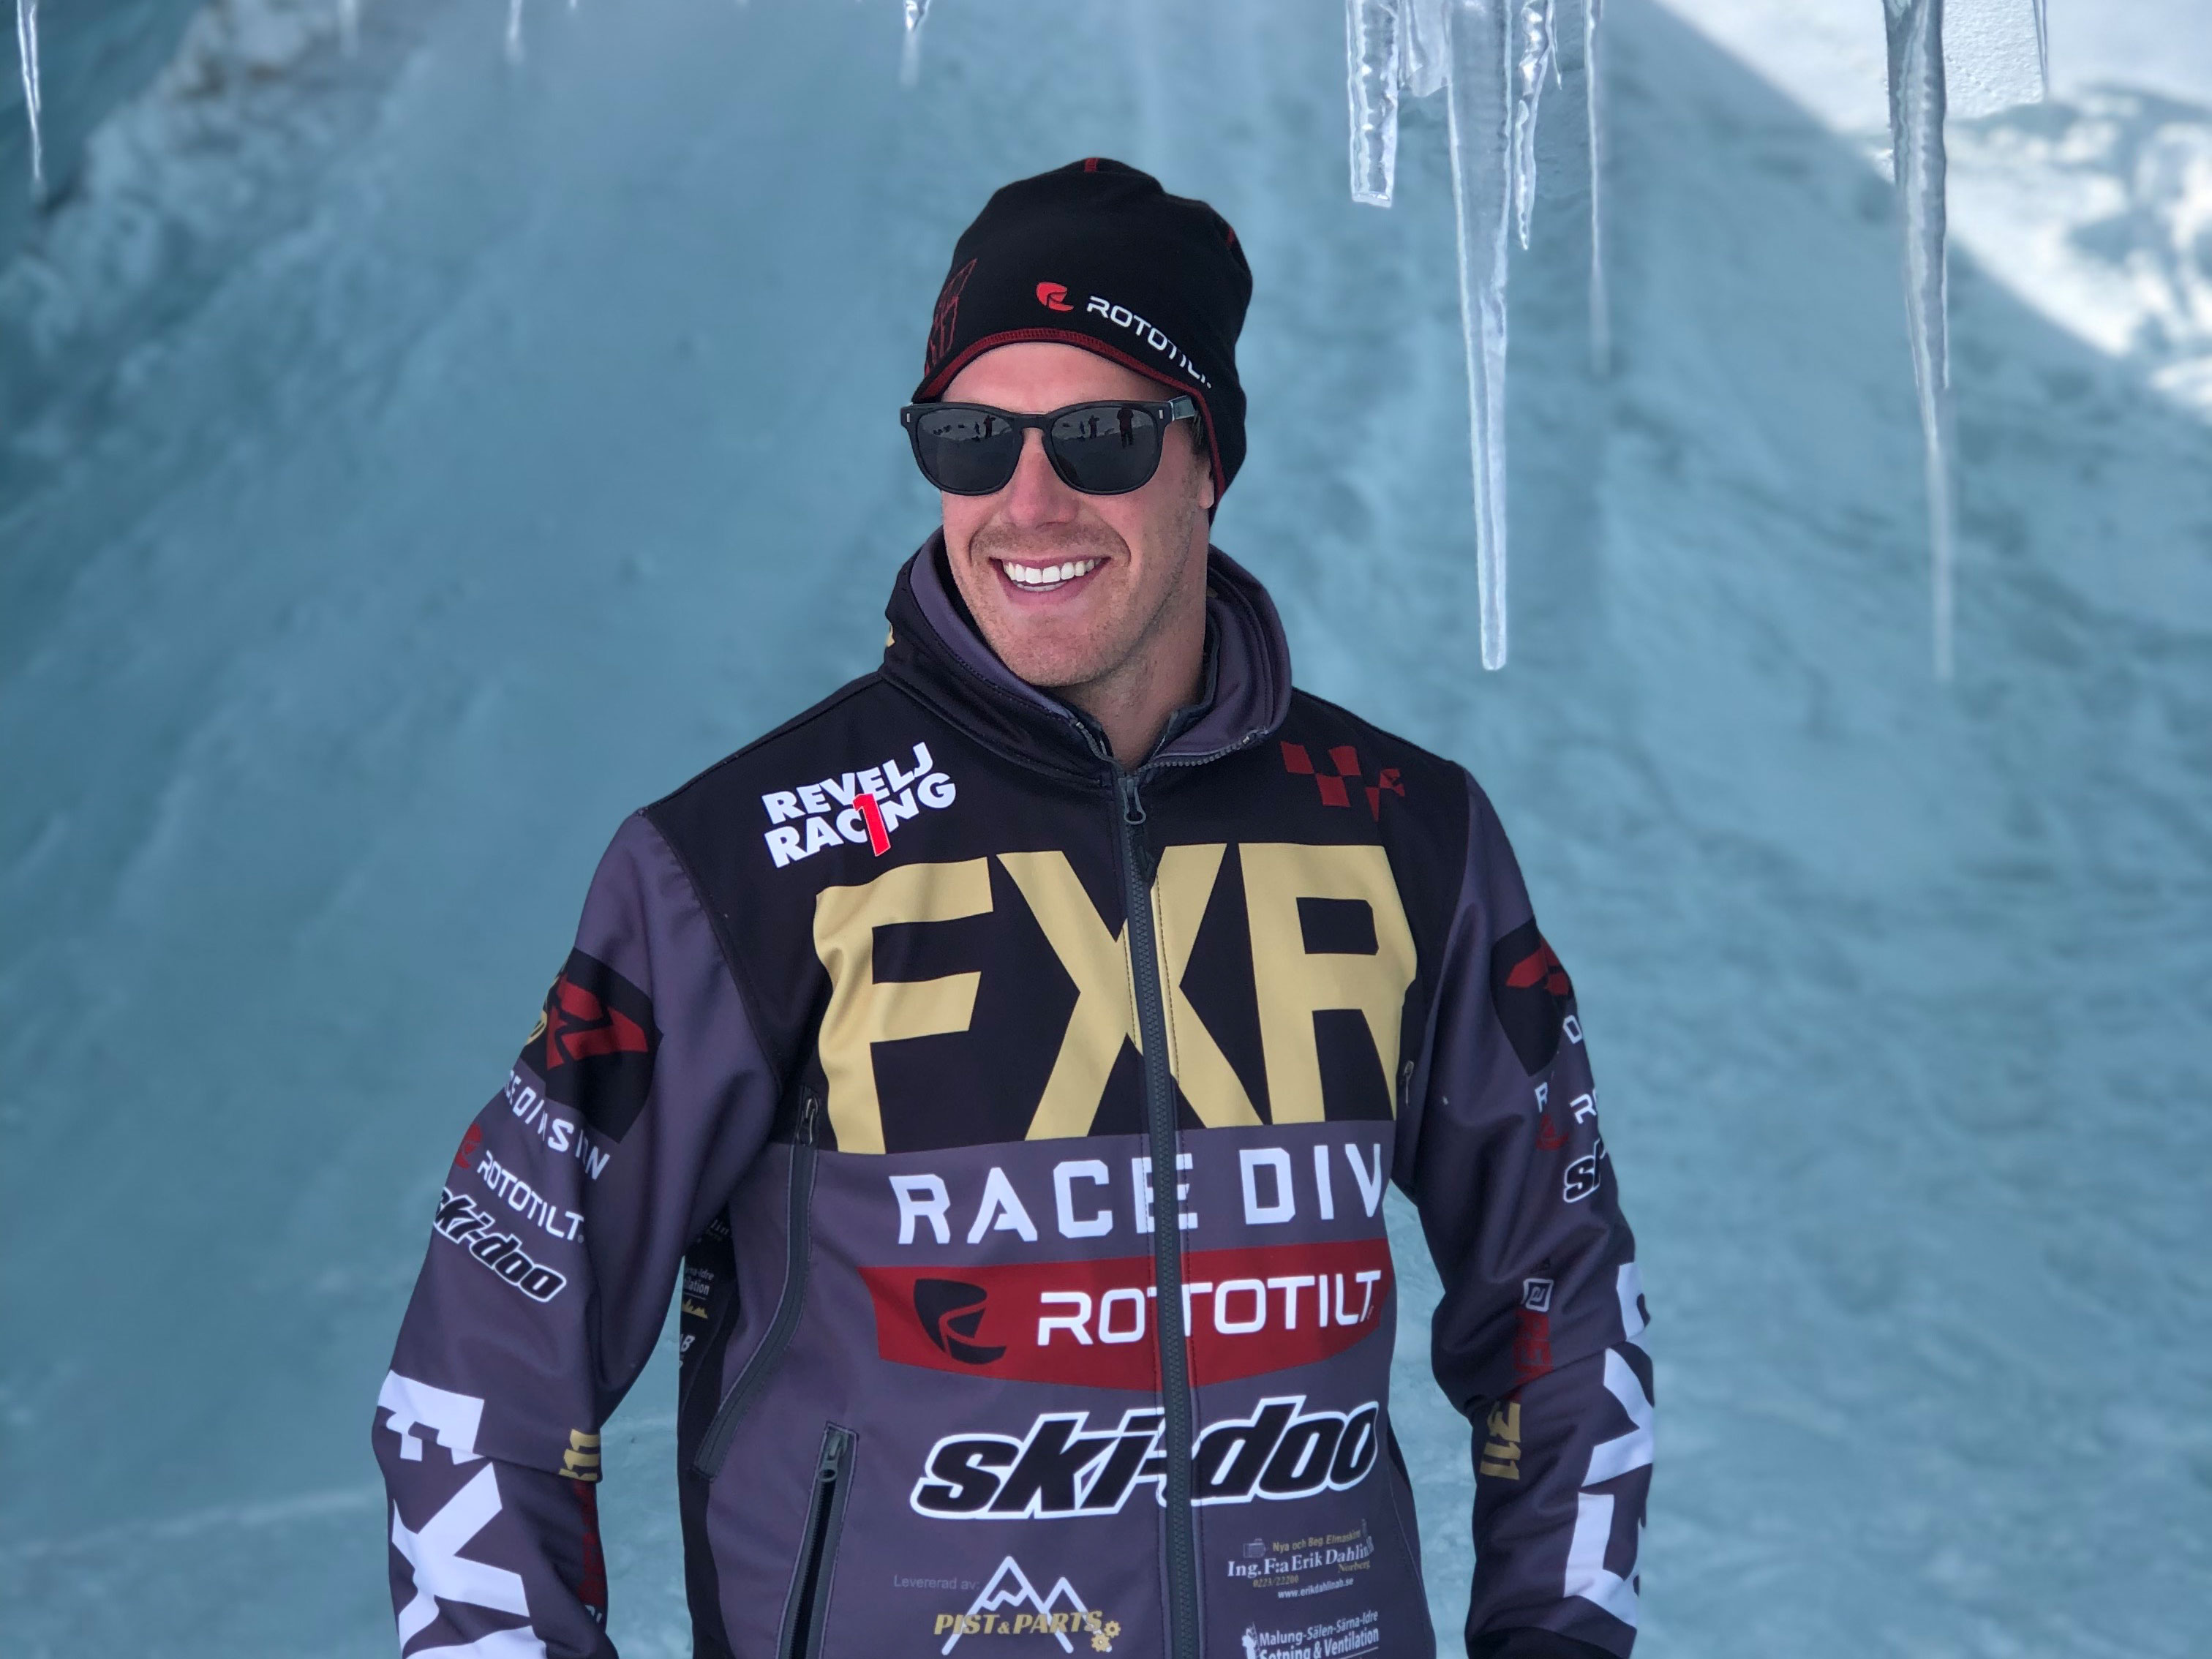 Adam Renheim, Ski-Doo Ambassador